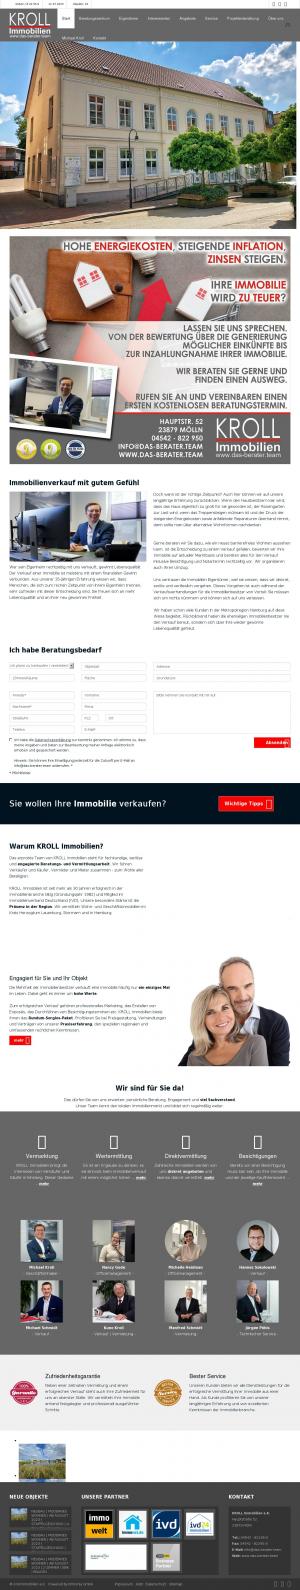 www.die-makler.de